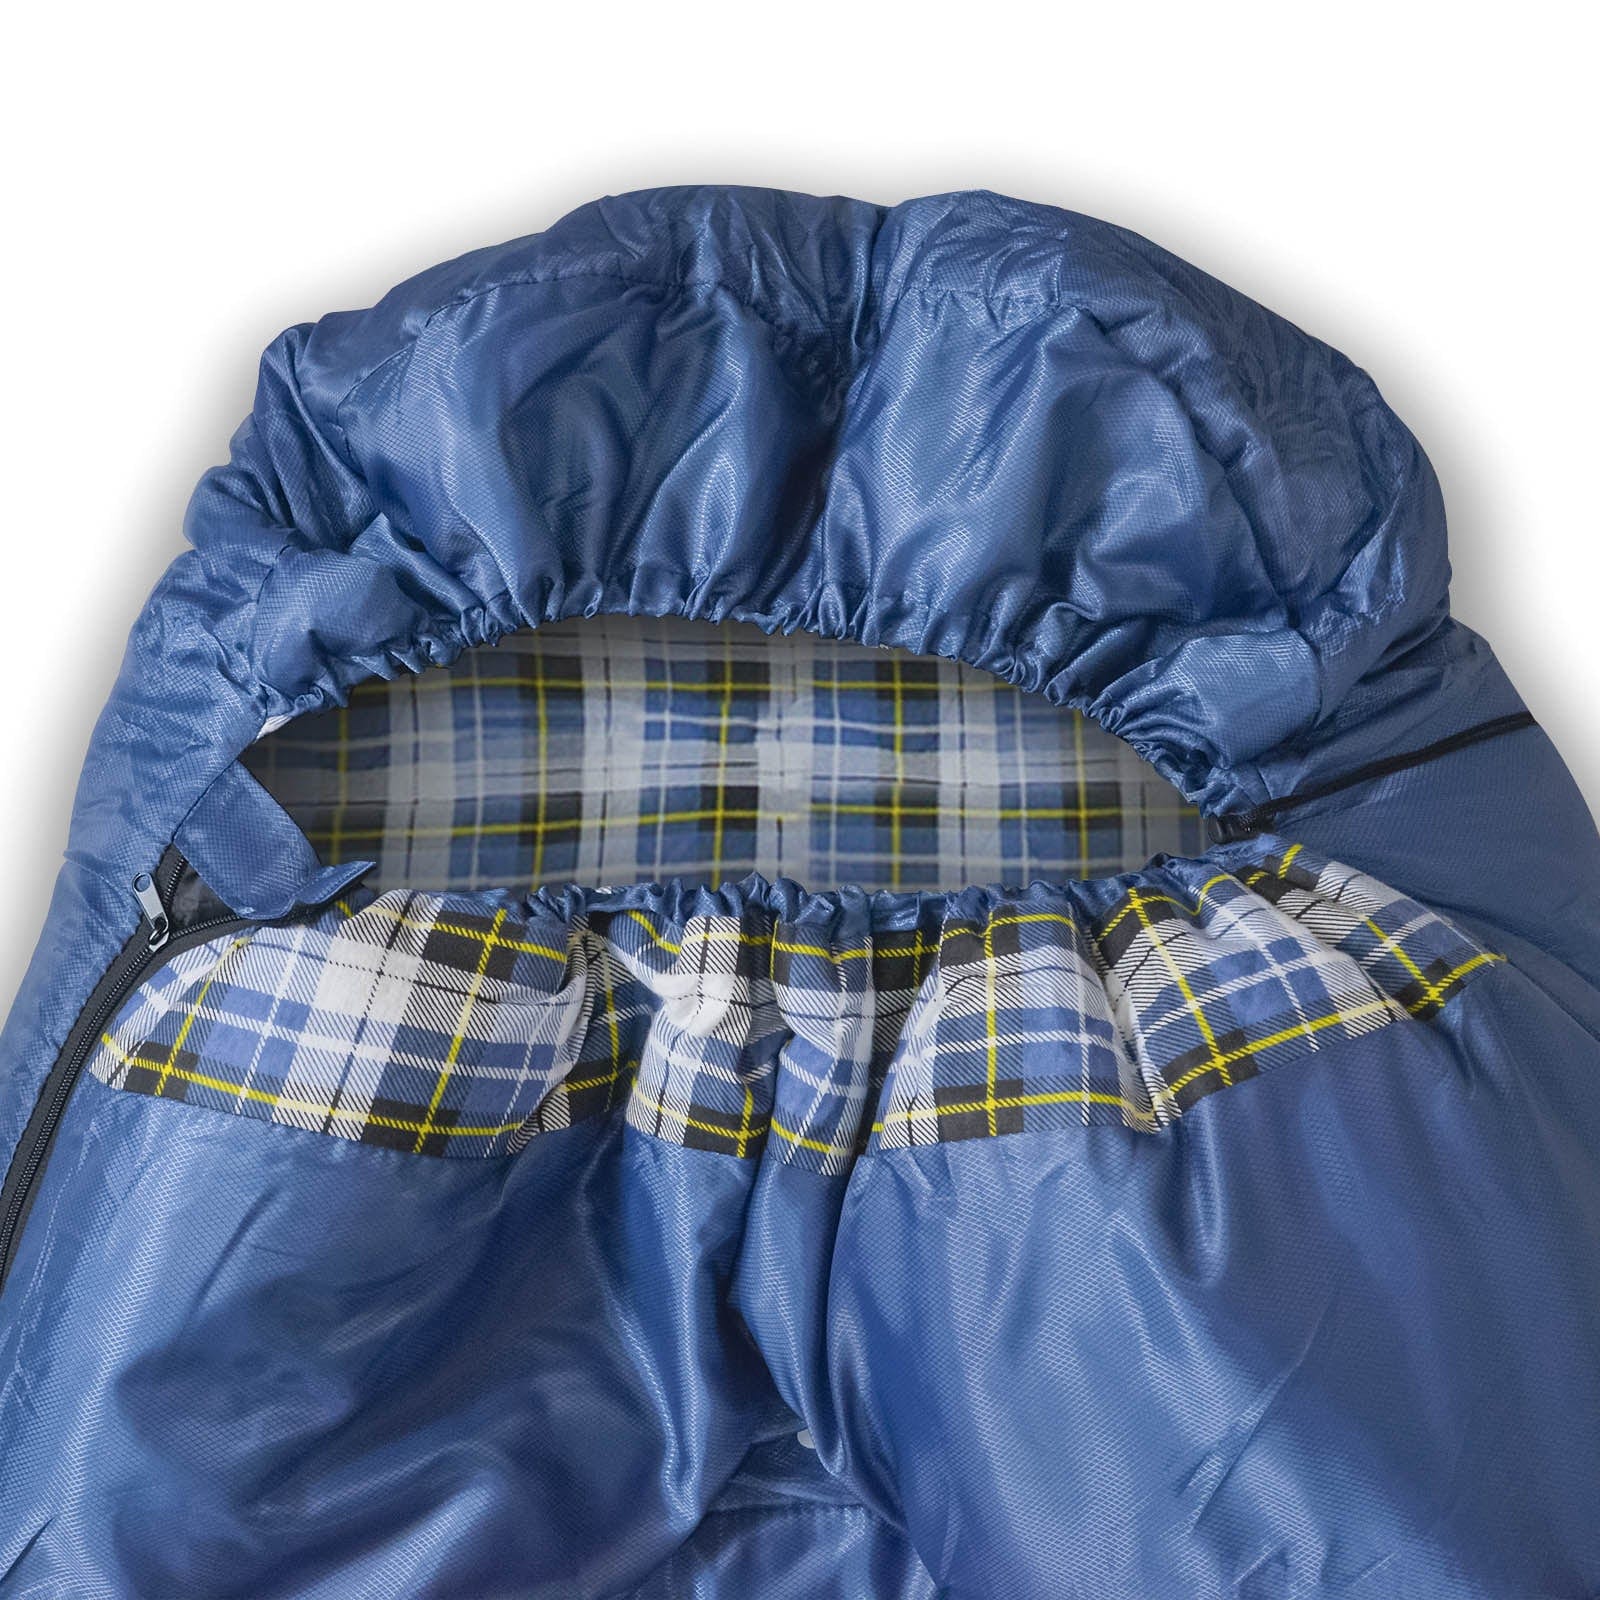 GeerTop Outdoor Store Flannel Cotton Lightweight 3 -4 Season Sleeping Bag